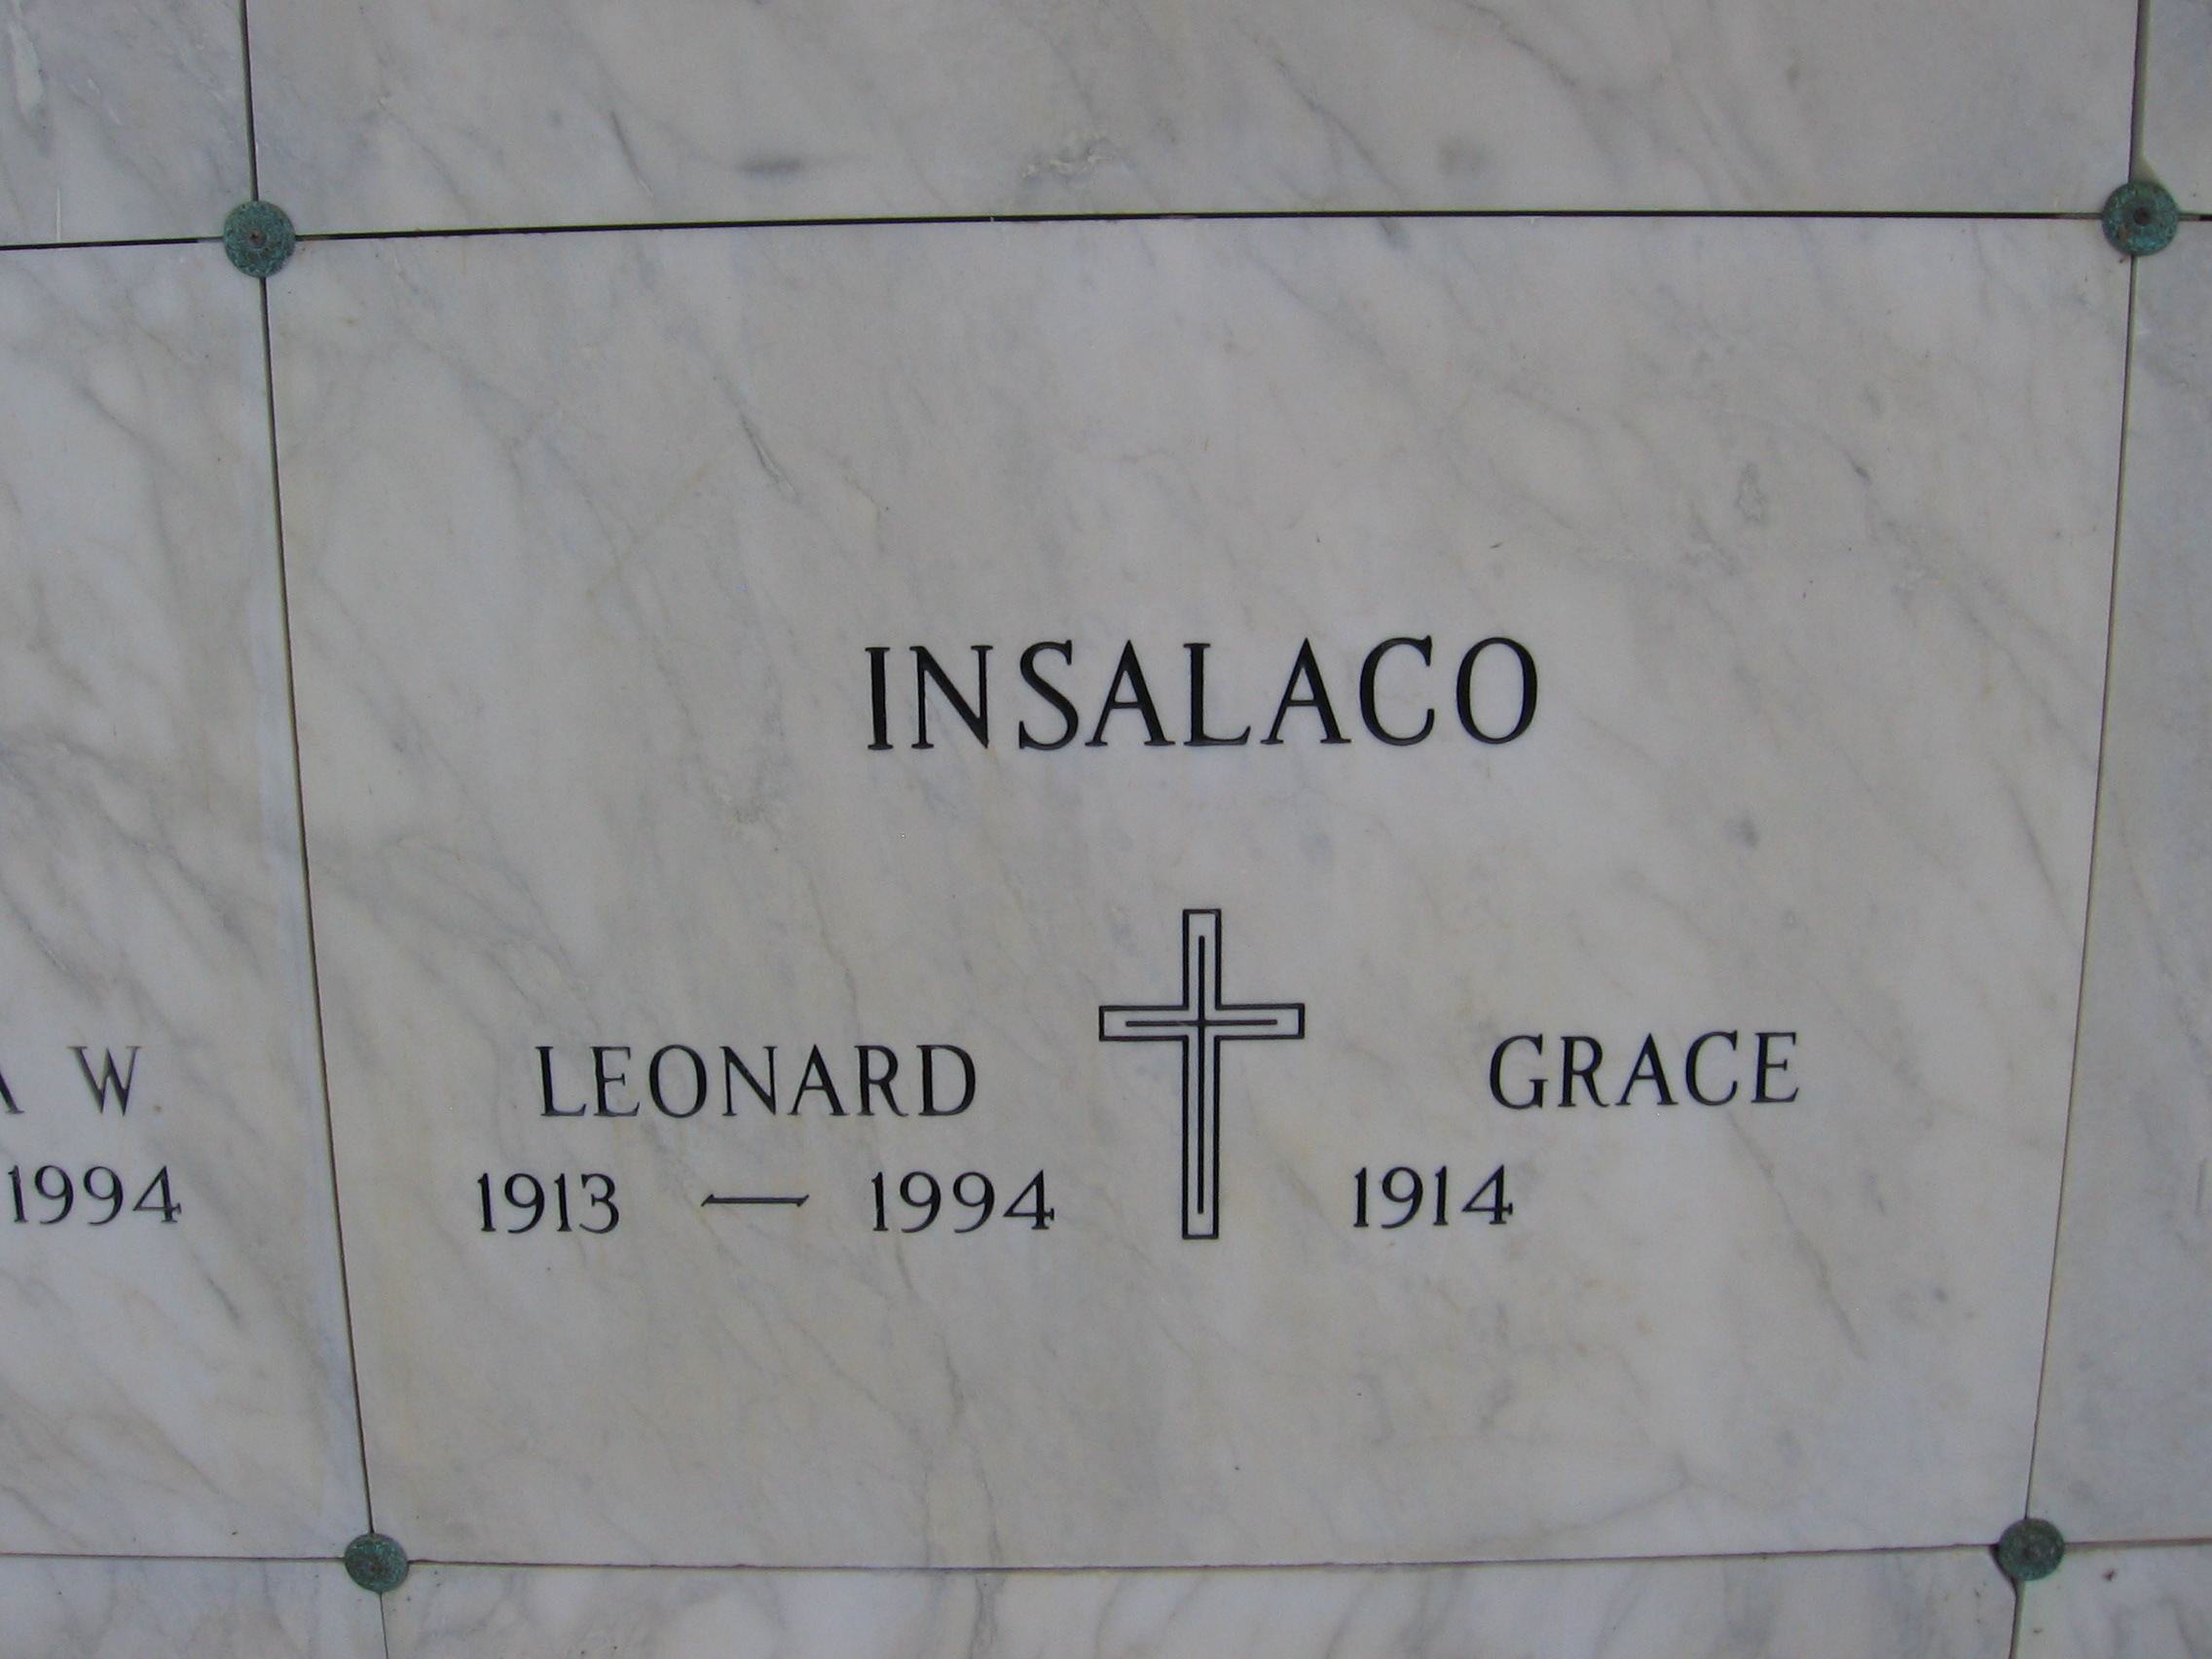 Leonard Insalaco